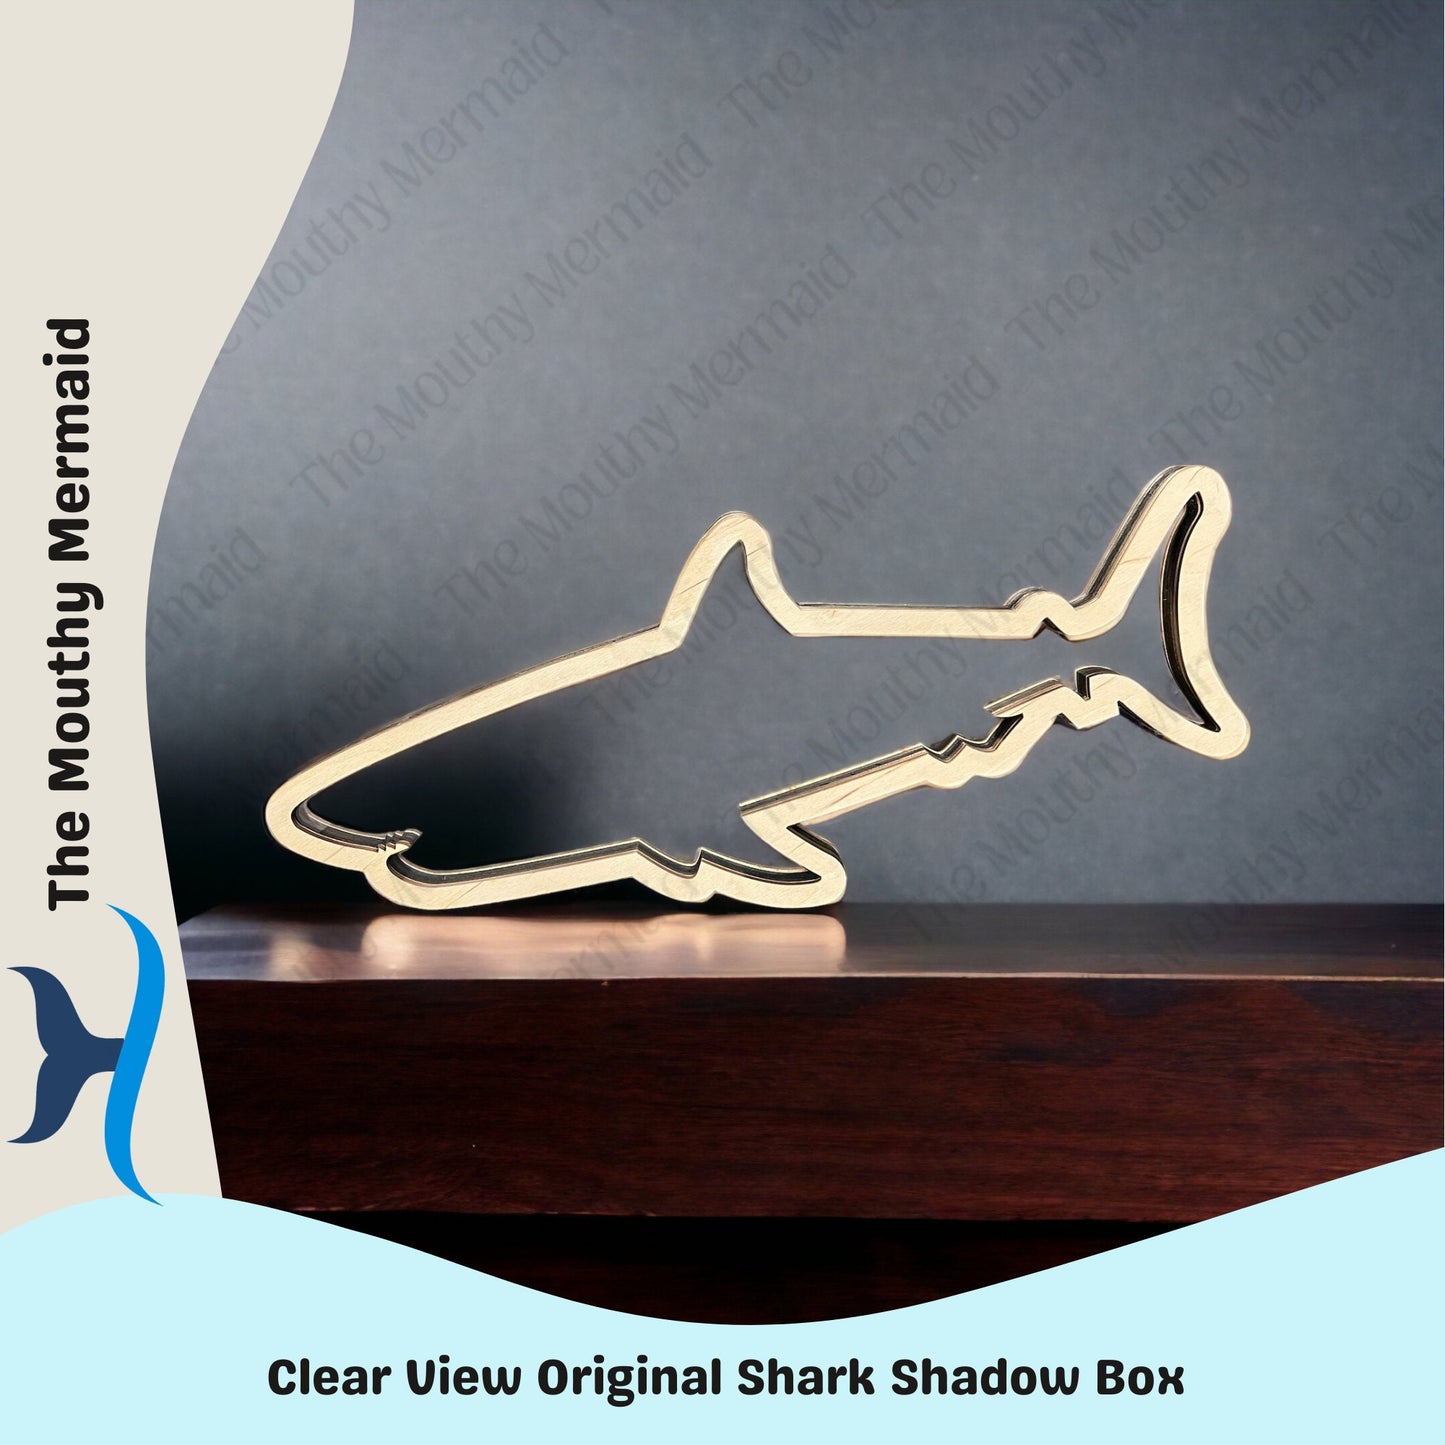 Clear View Original Shark Shadow Box